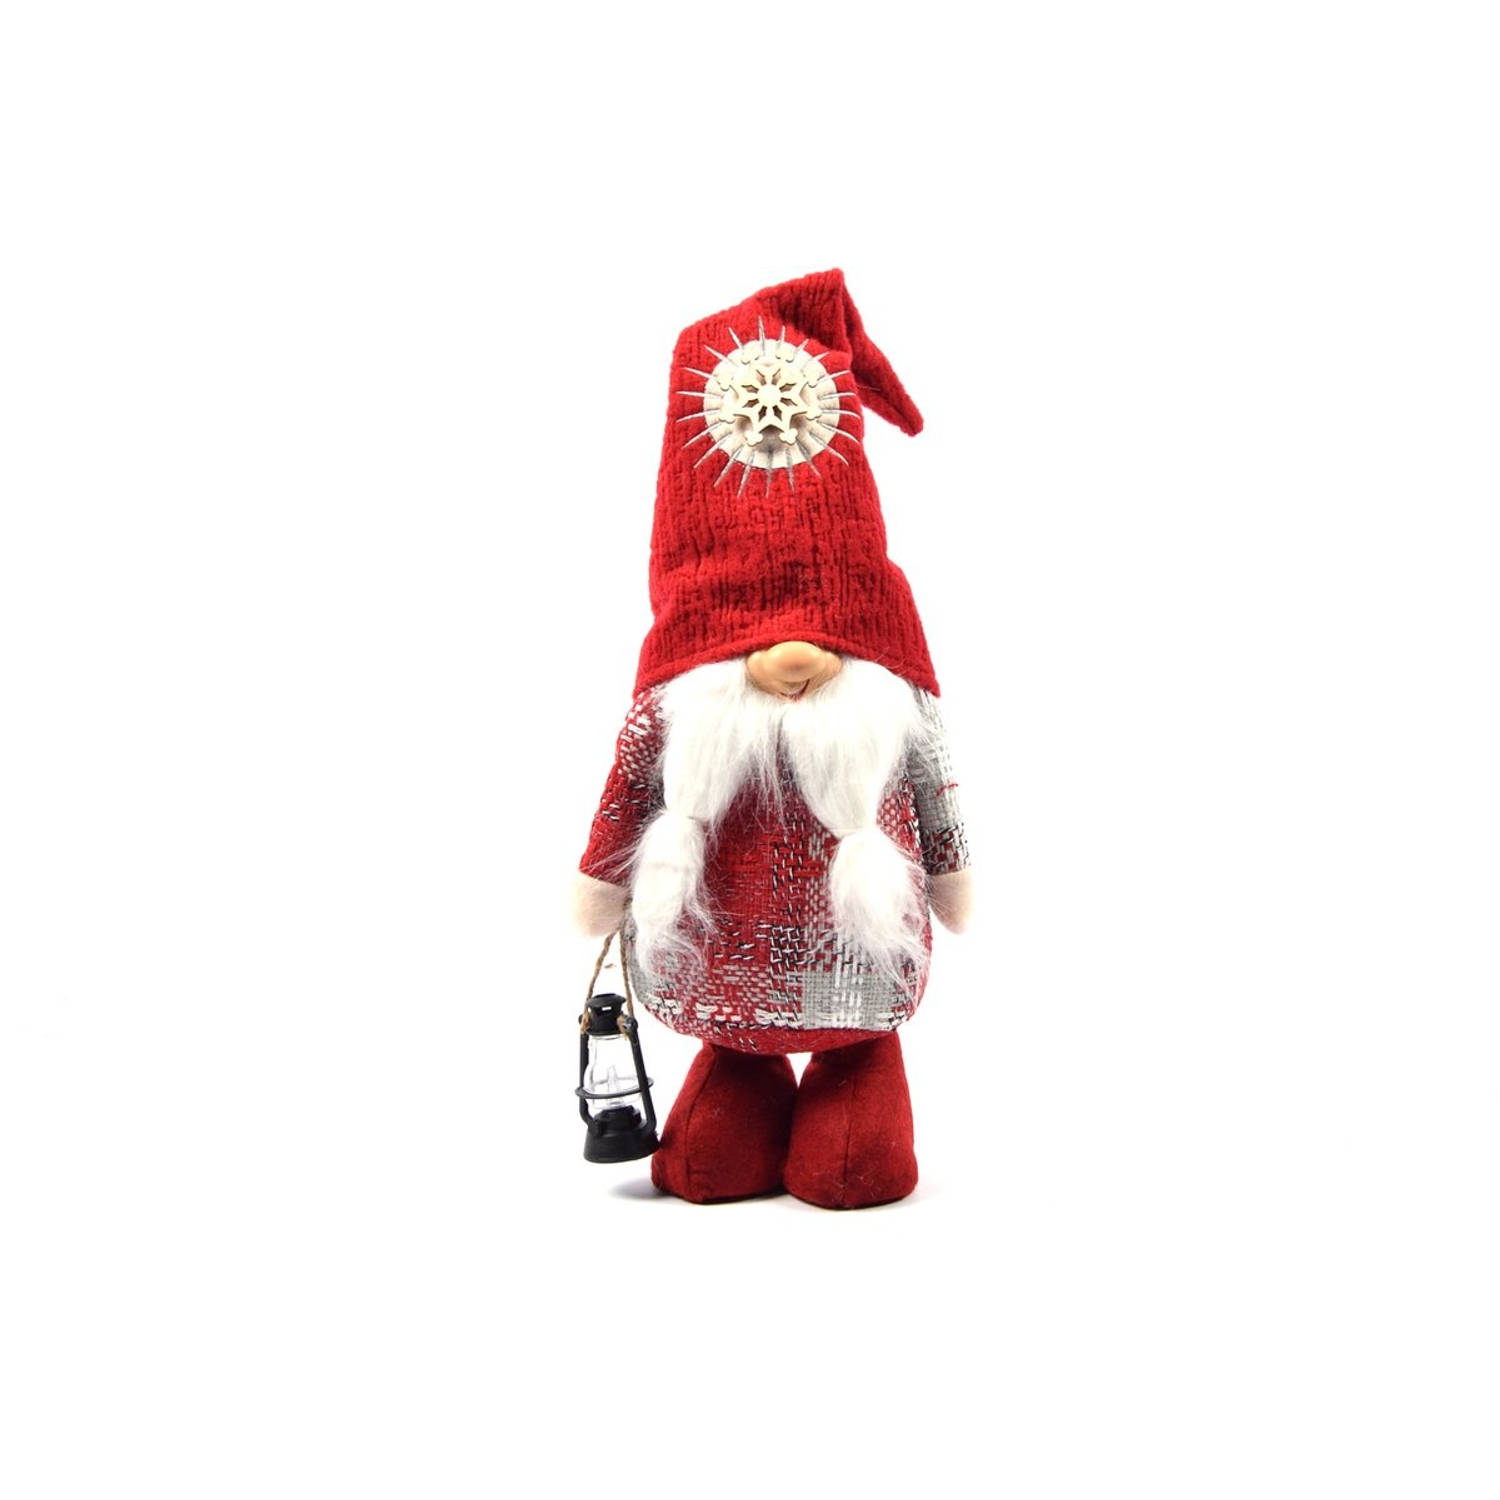 Gnome Staand 50 Cm Rood Kerstman Staande Lantaarn Kerstman Dwerg Staand Puntmuts Kerst Kabouter Gevuld Met